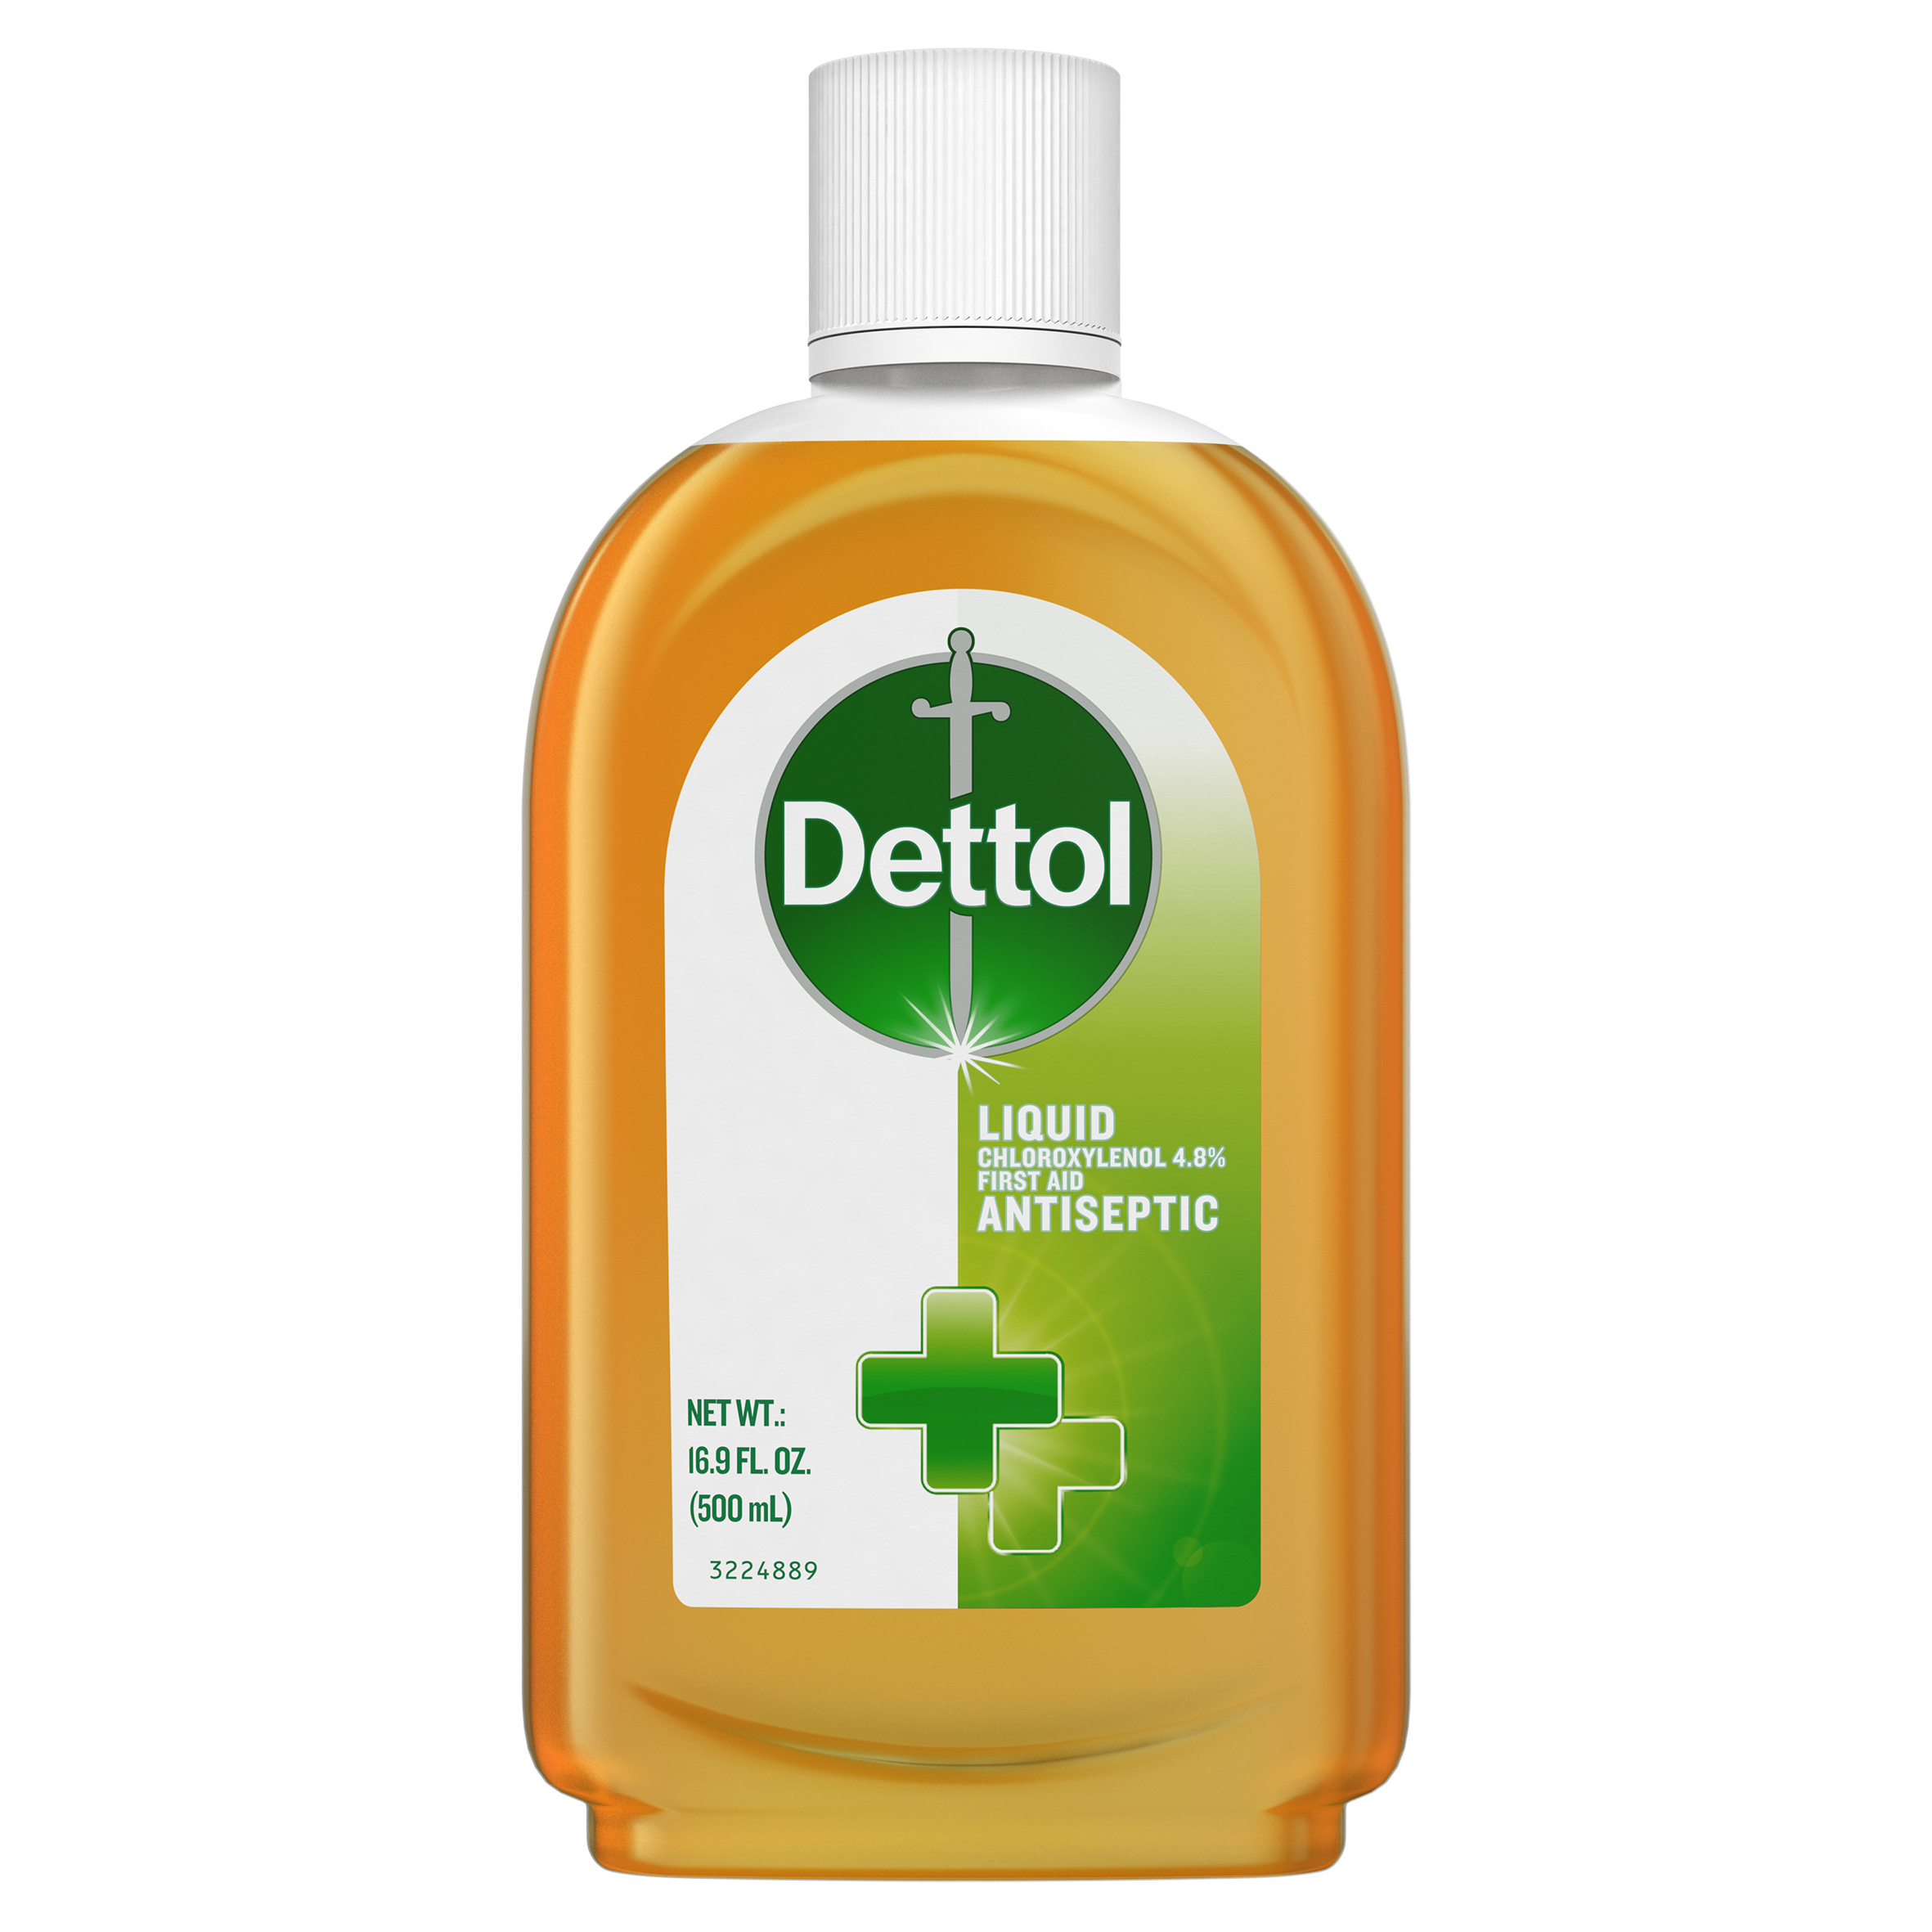 DETTOL® First Aid Antiseptic Liquid